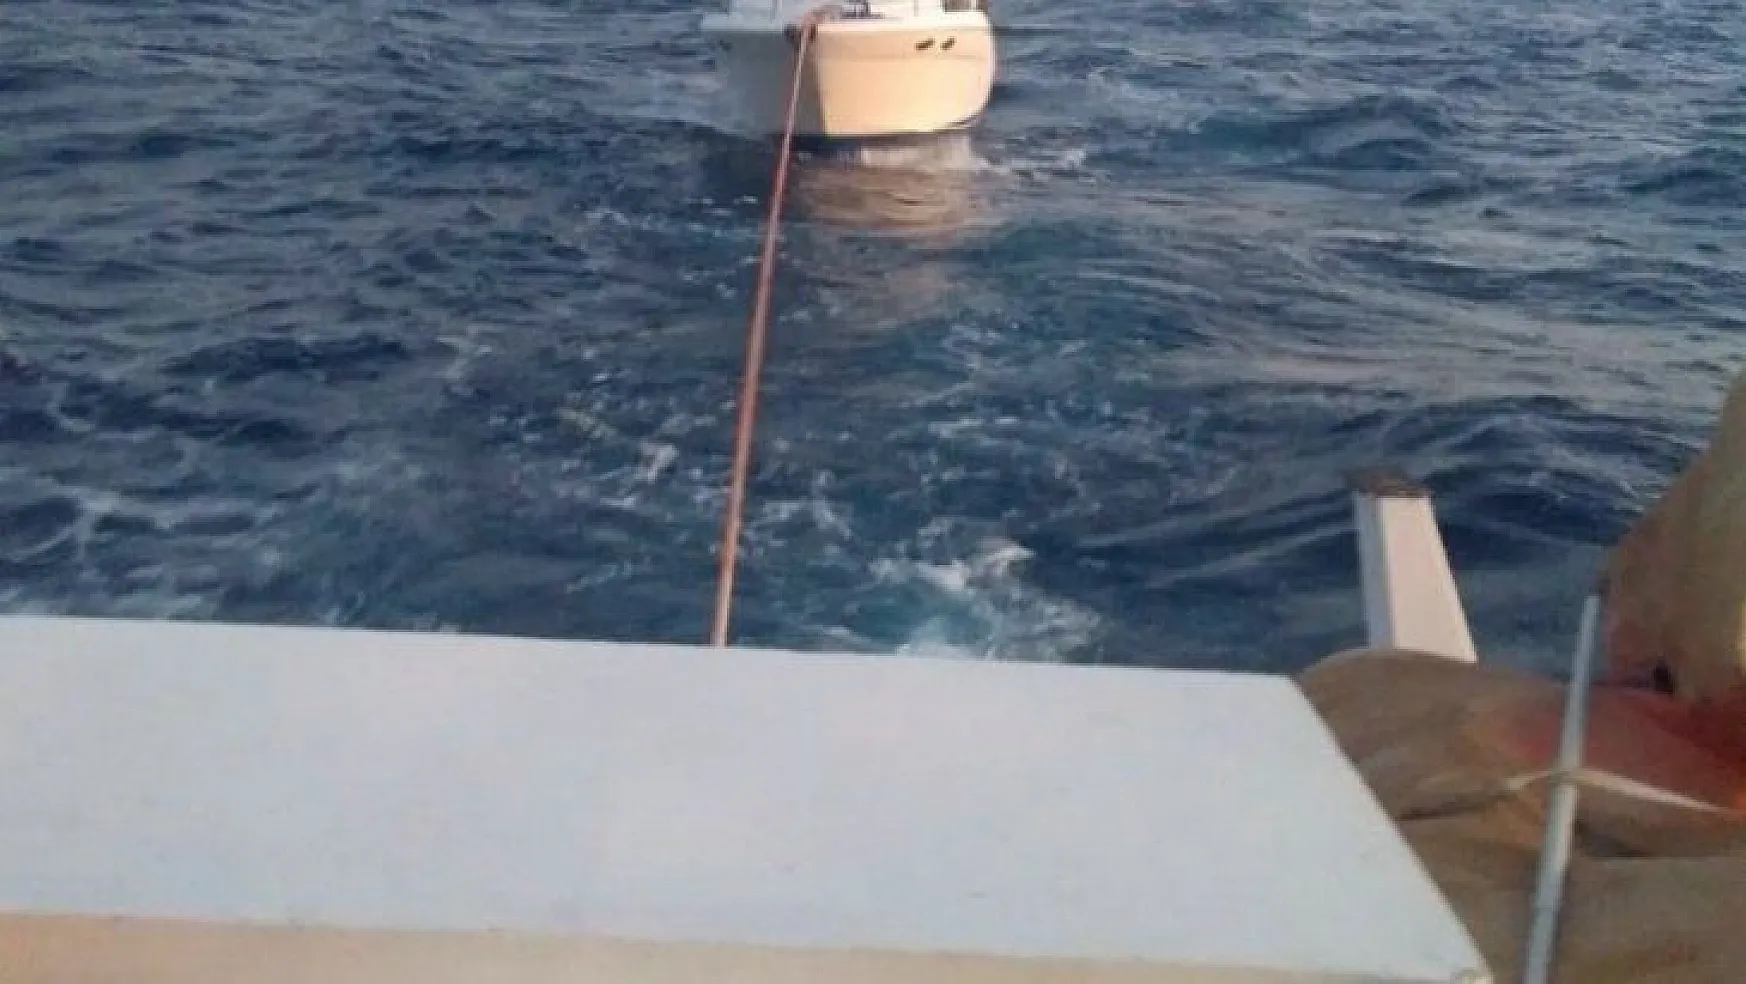 Bodrum açıklarında sürüklenen tekne kurtarıldı